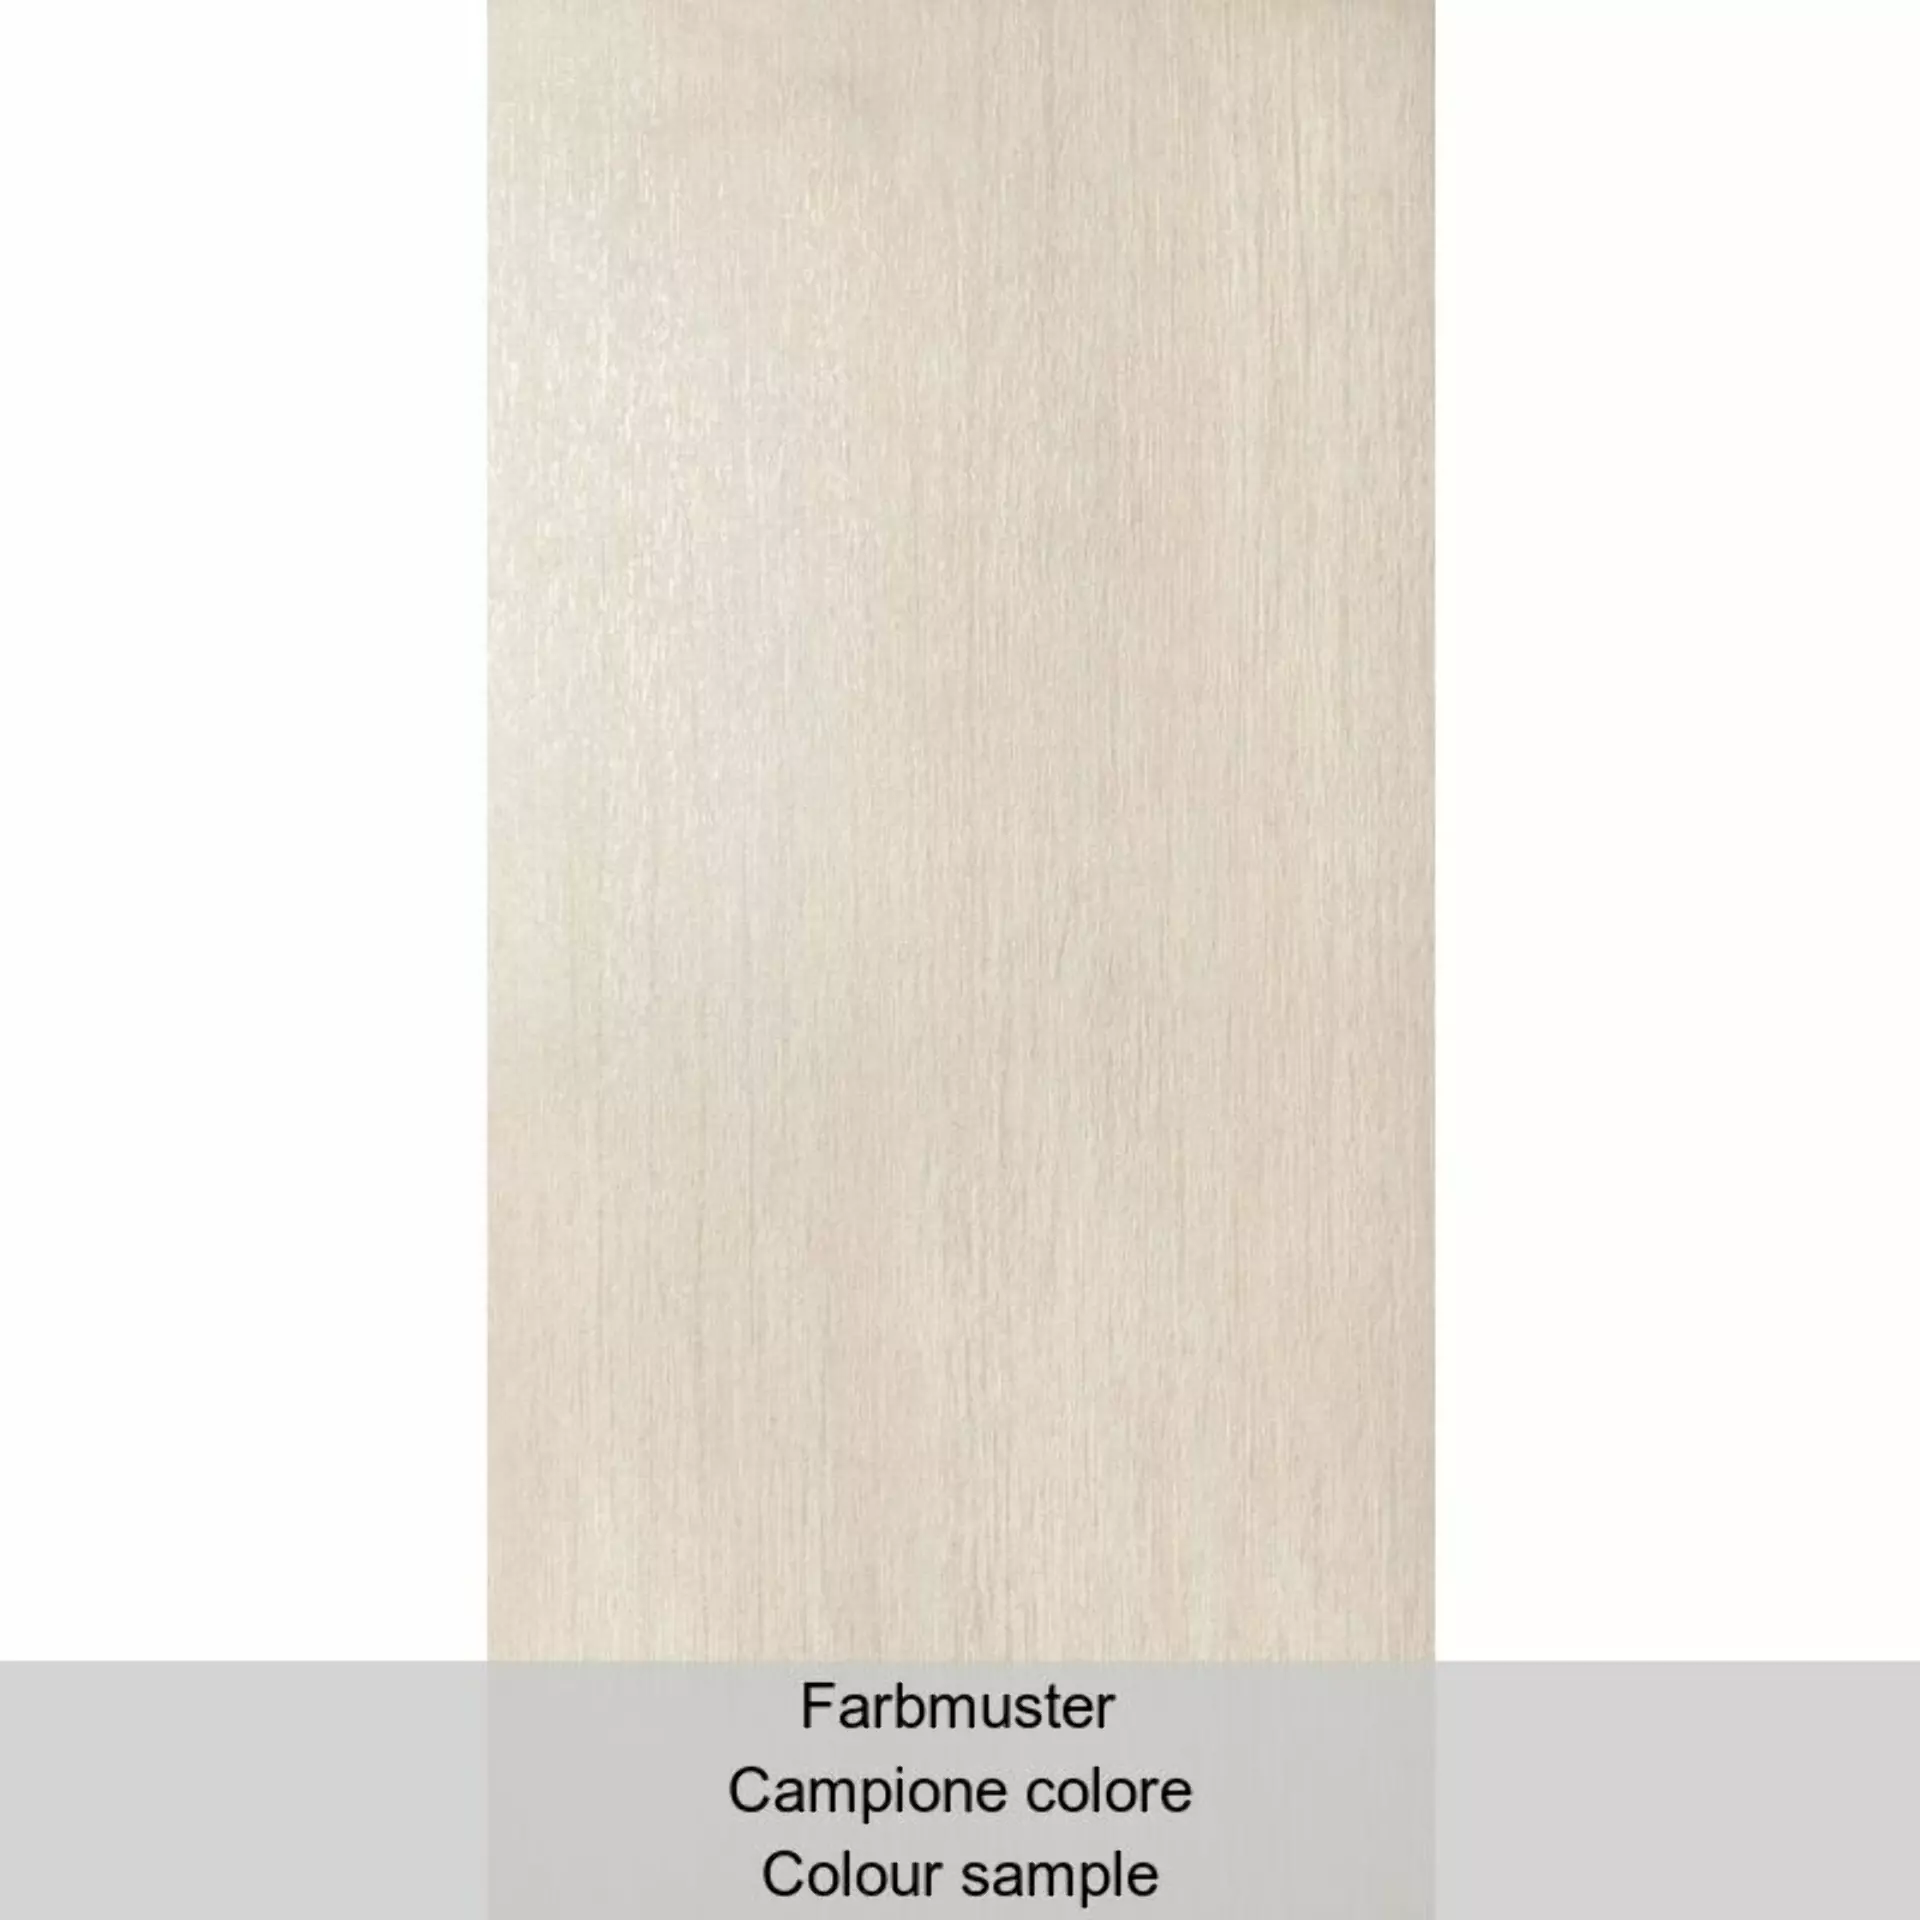 Casalgrande Metalwood Iridio Naturale – Matt 7790094 30x60cm rectified 9mm